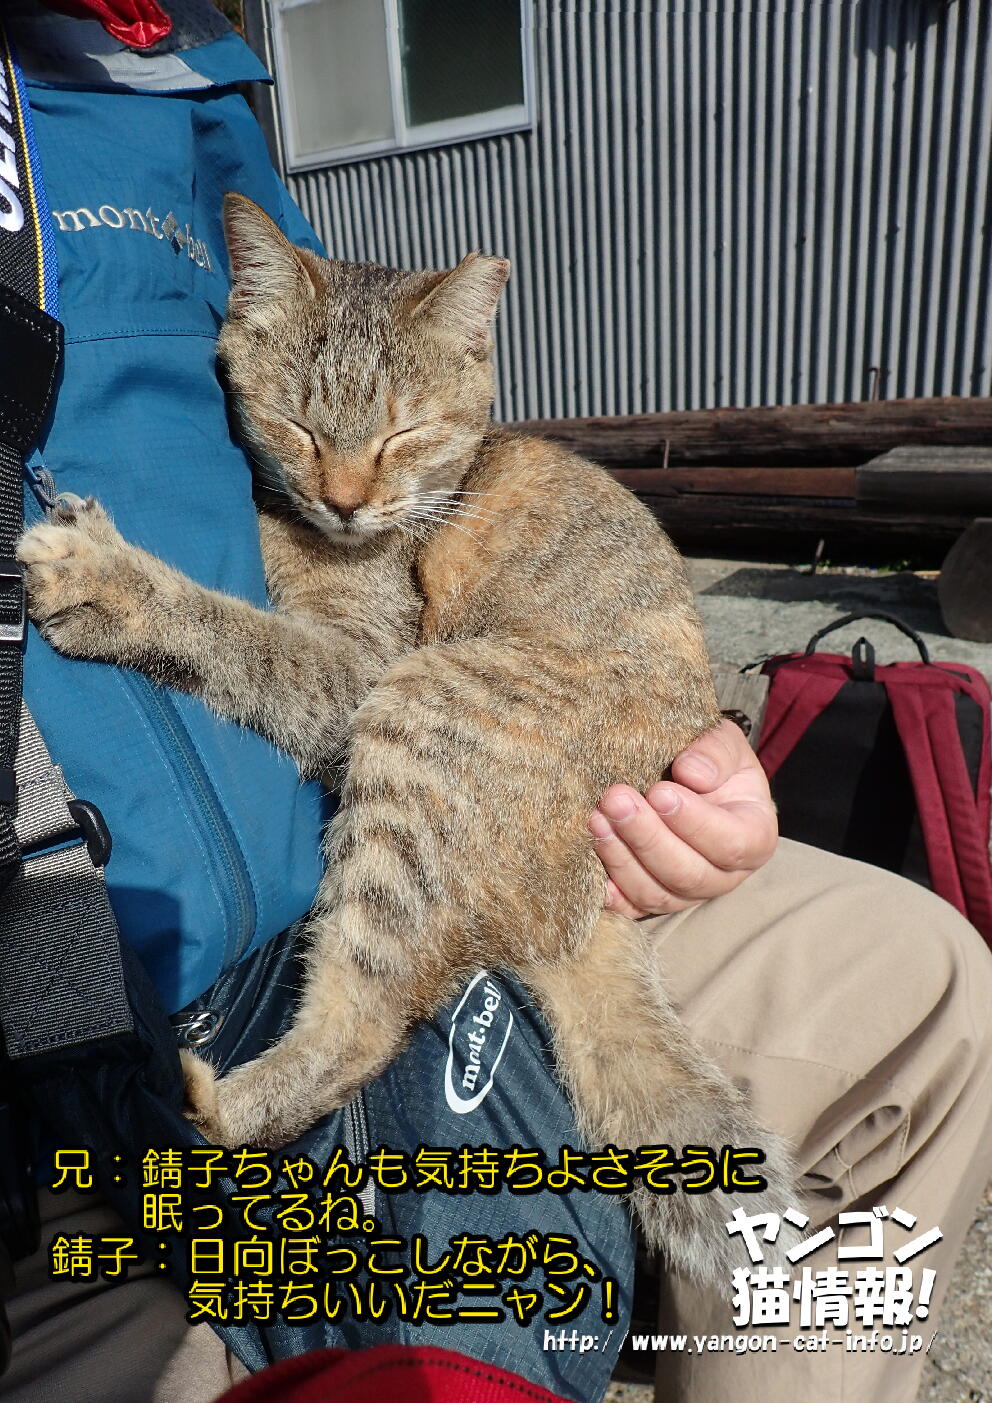 猫旅_第15回_愛媛県青島_022